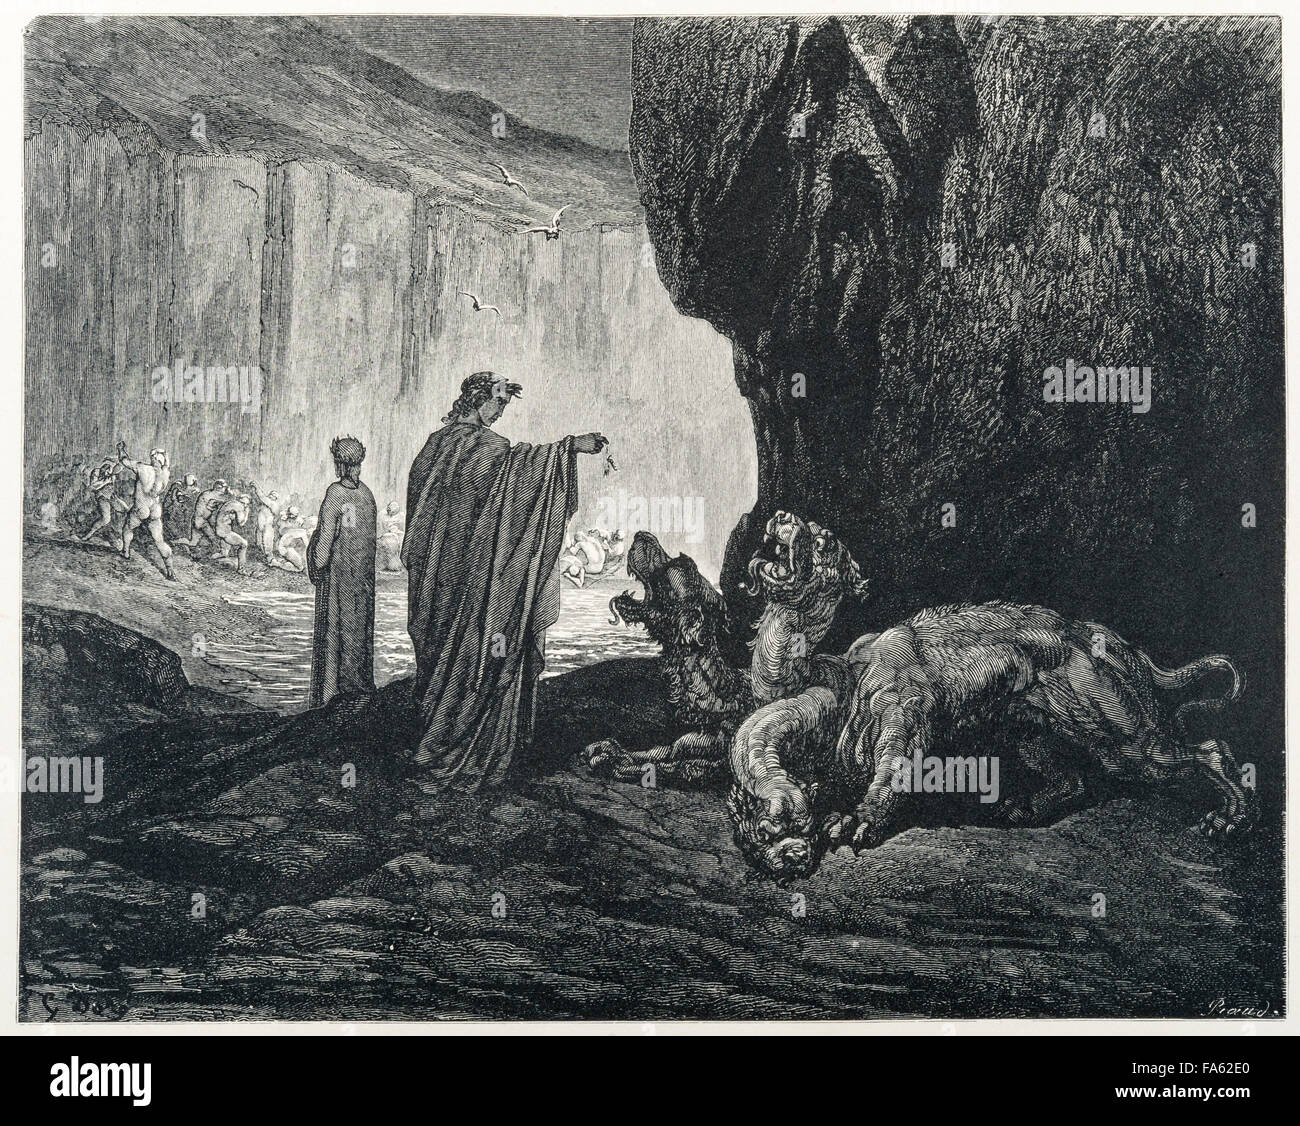 BOMB Magazine  Dante's Inferno, Canto XXXIV